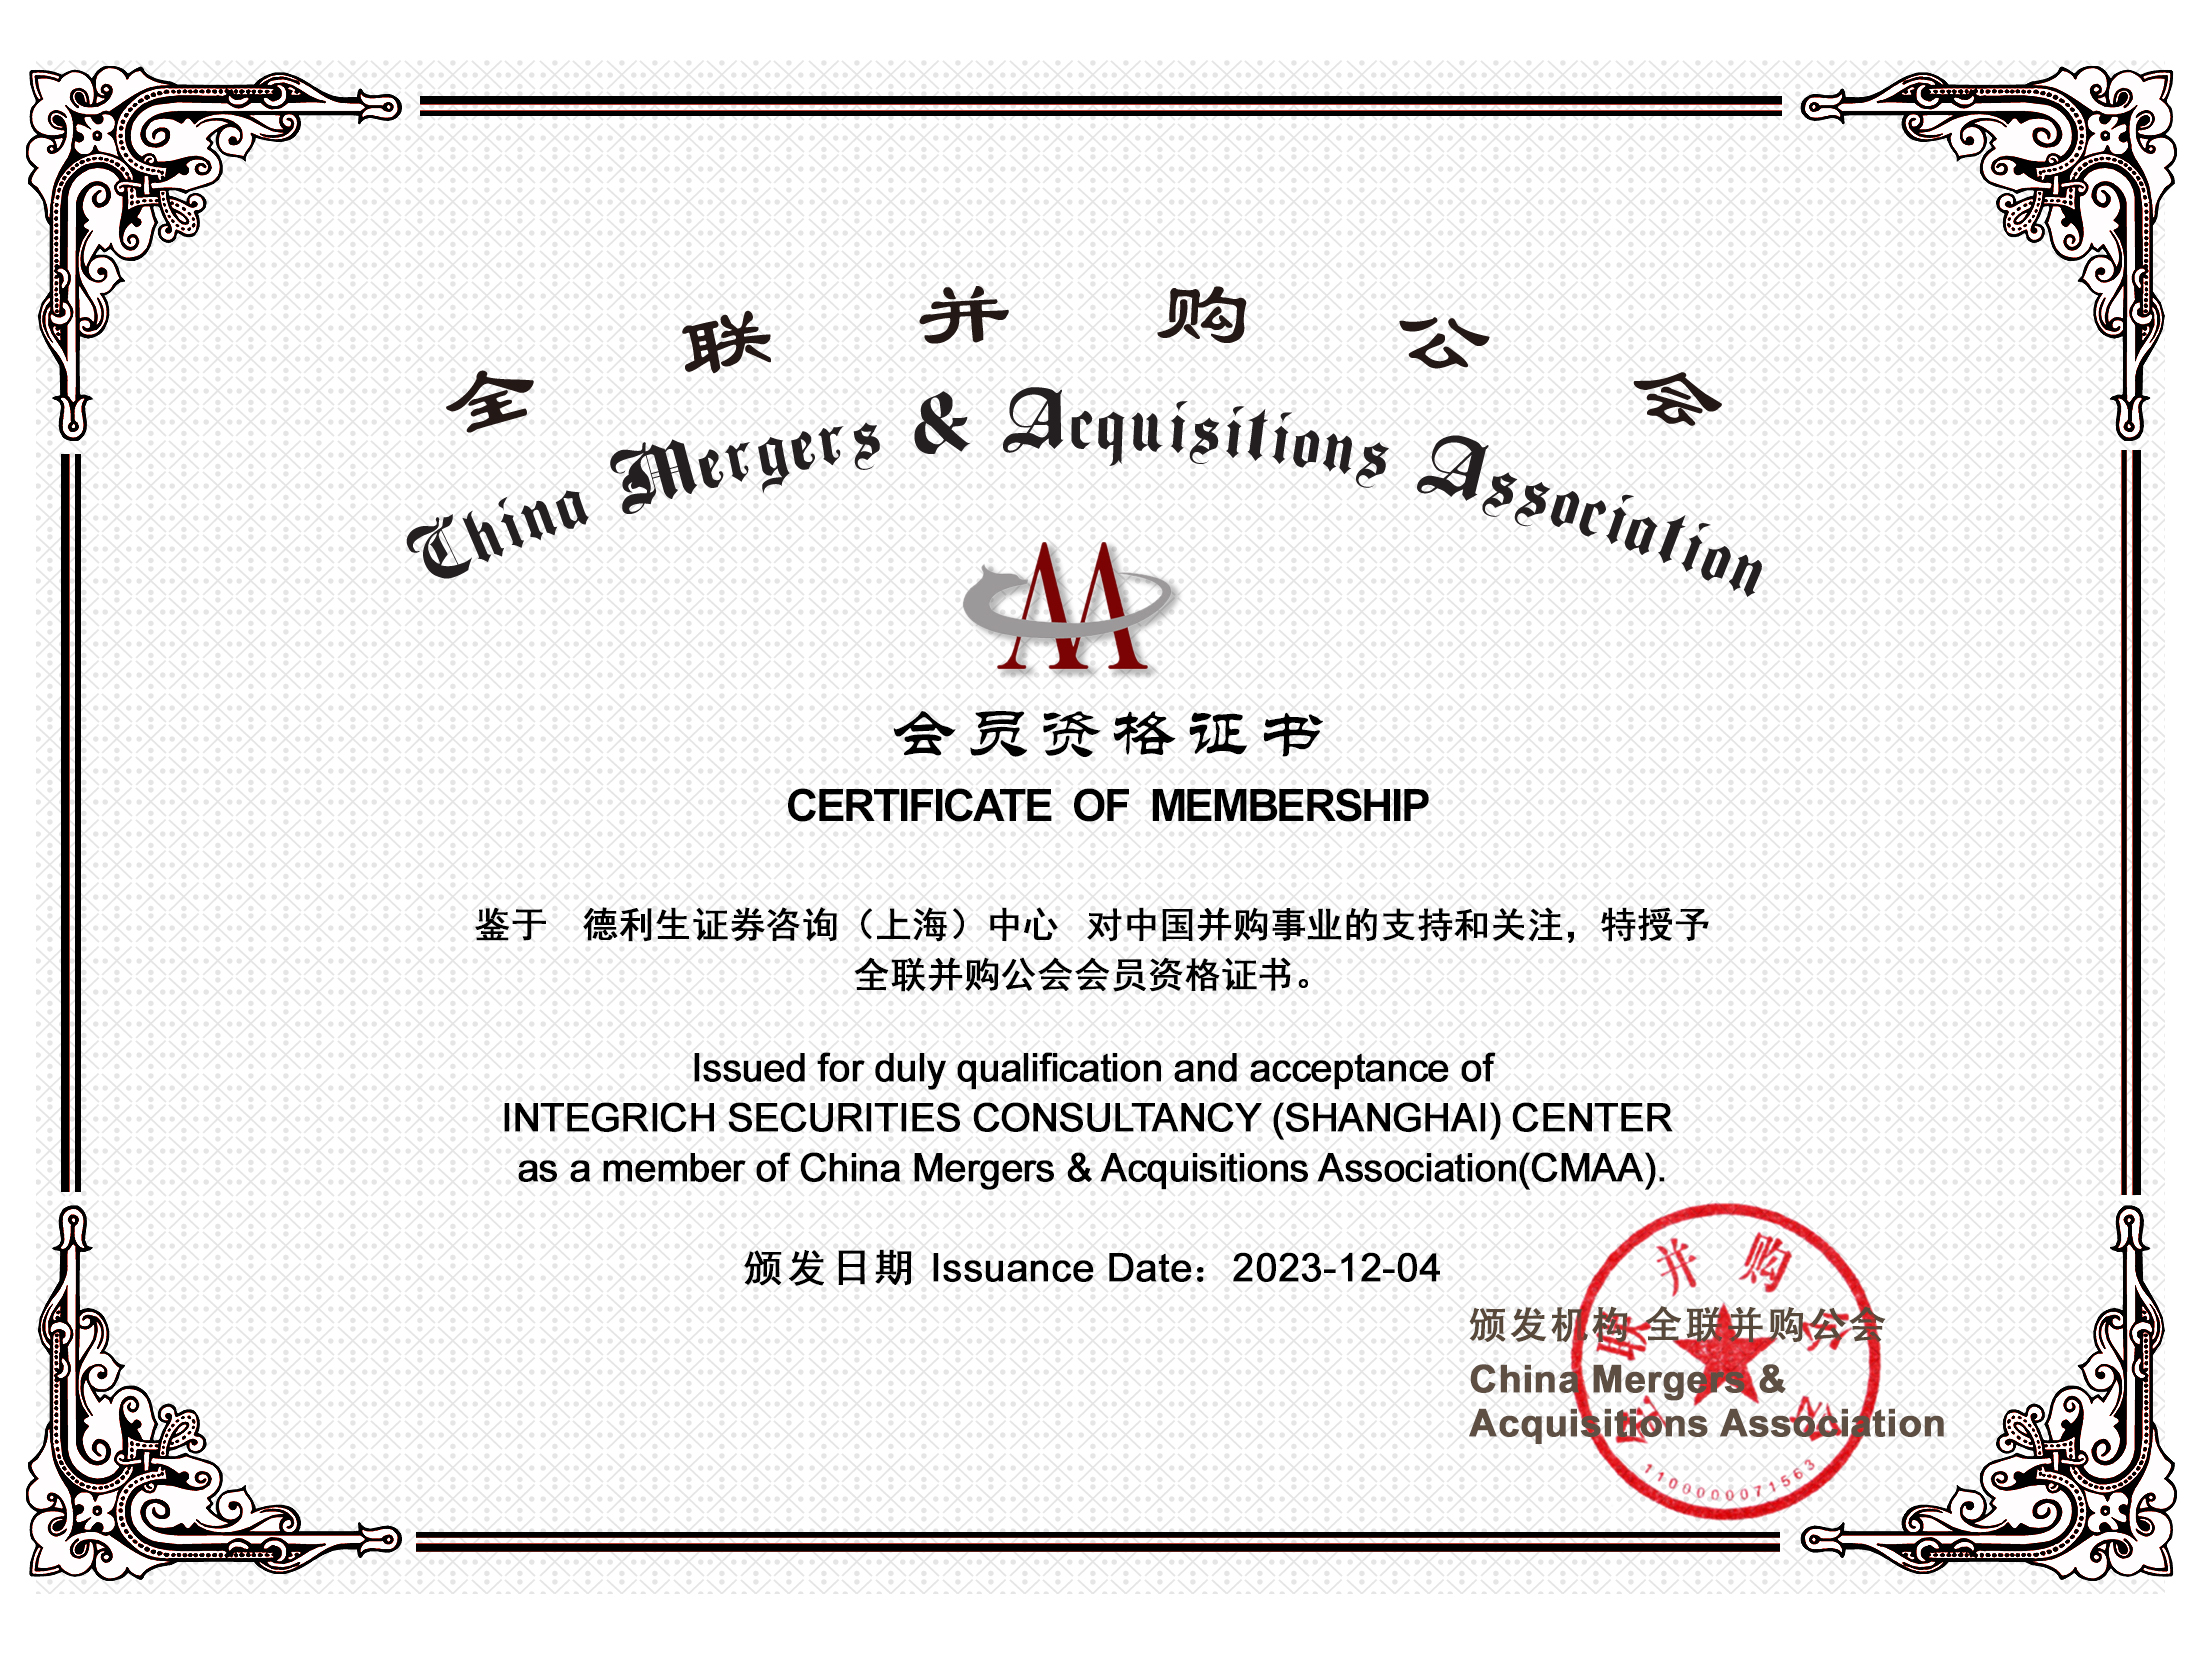 机构普通会员资格证书-德利生证券咨询（上海）中心.jpg